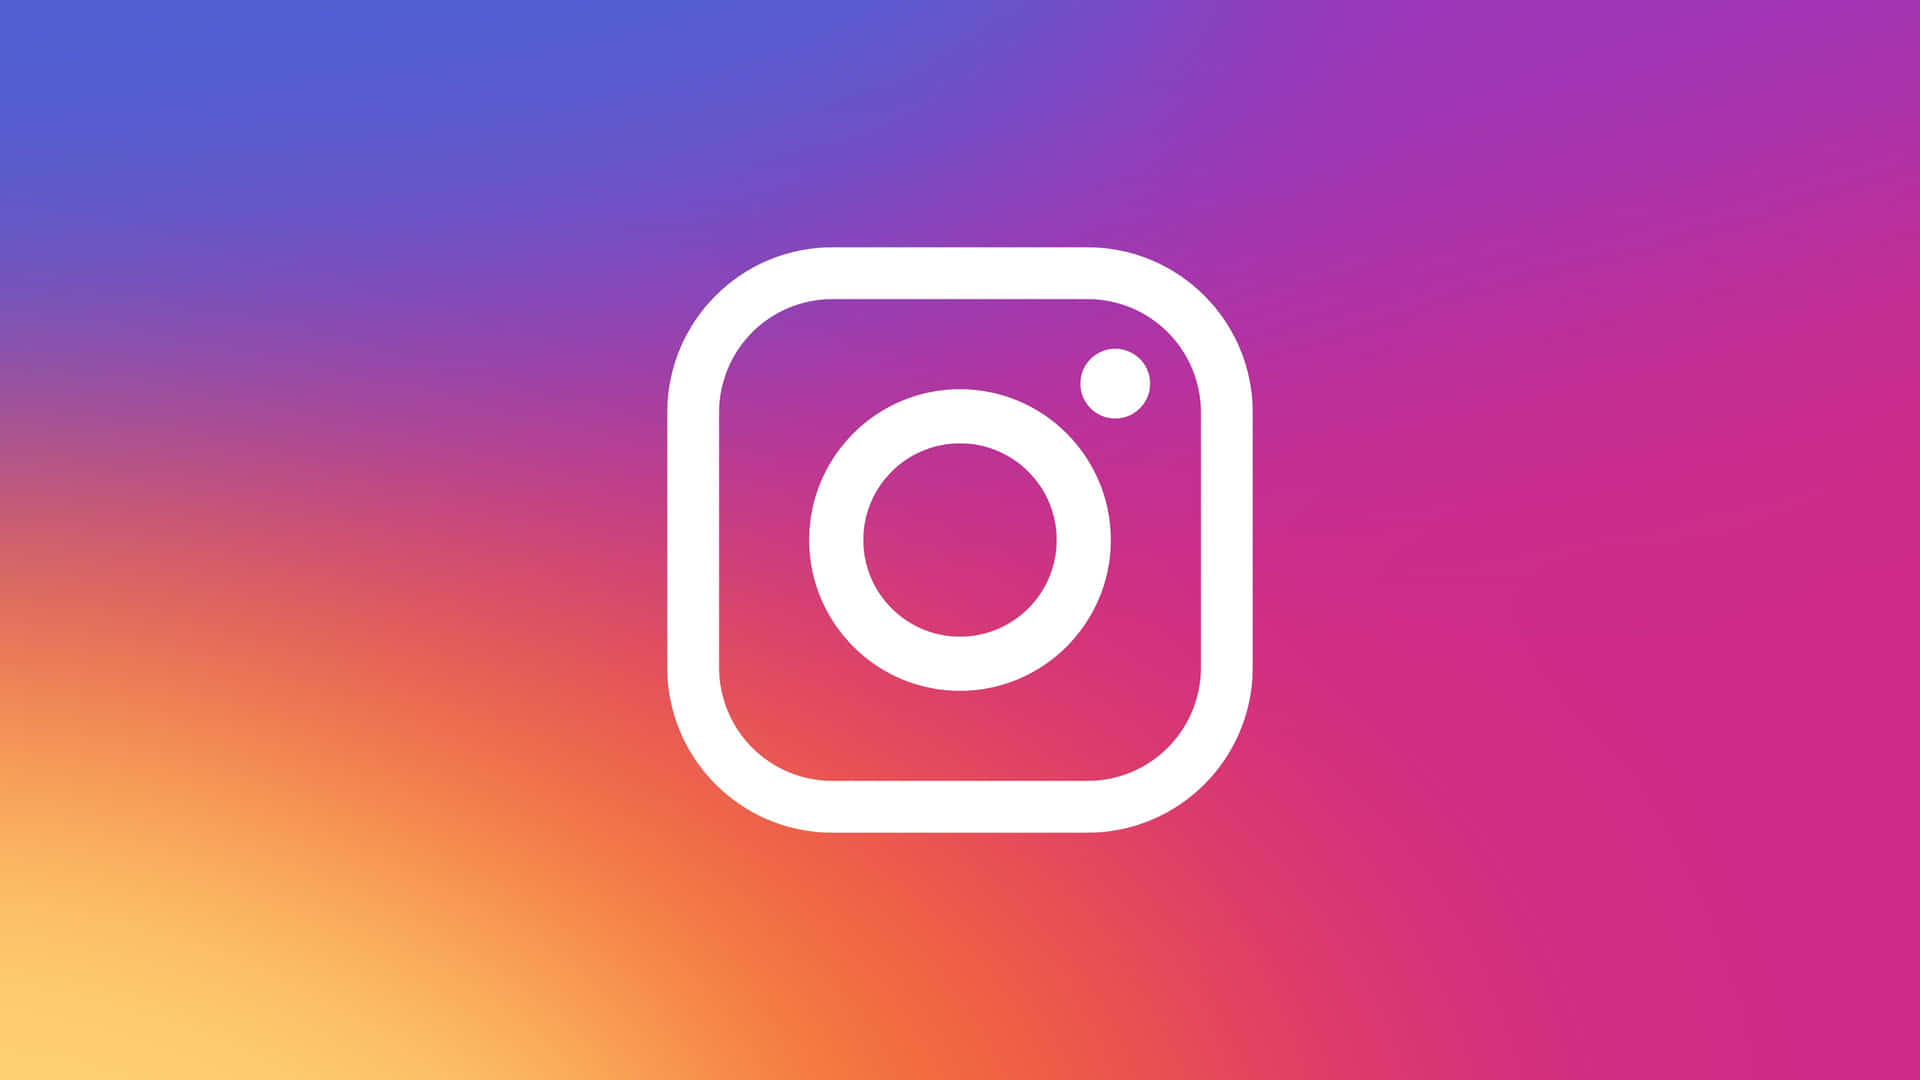 Aesthetic Instagram New Logo